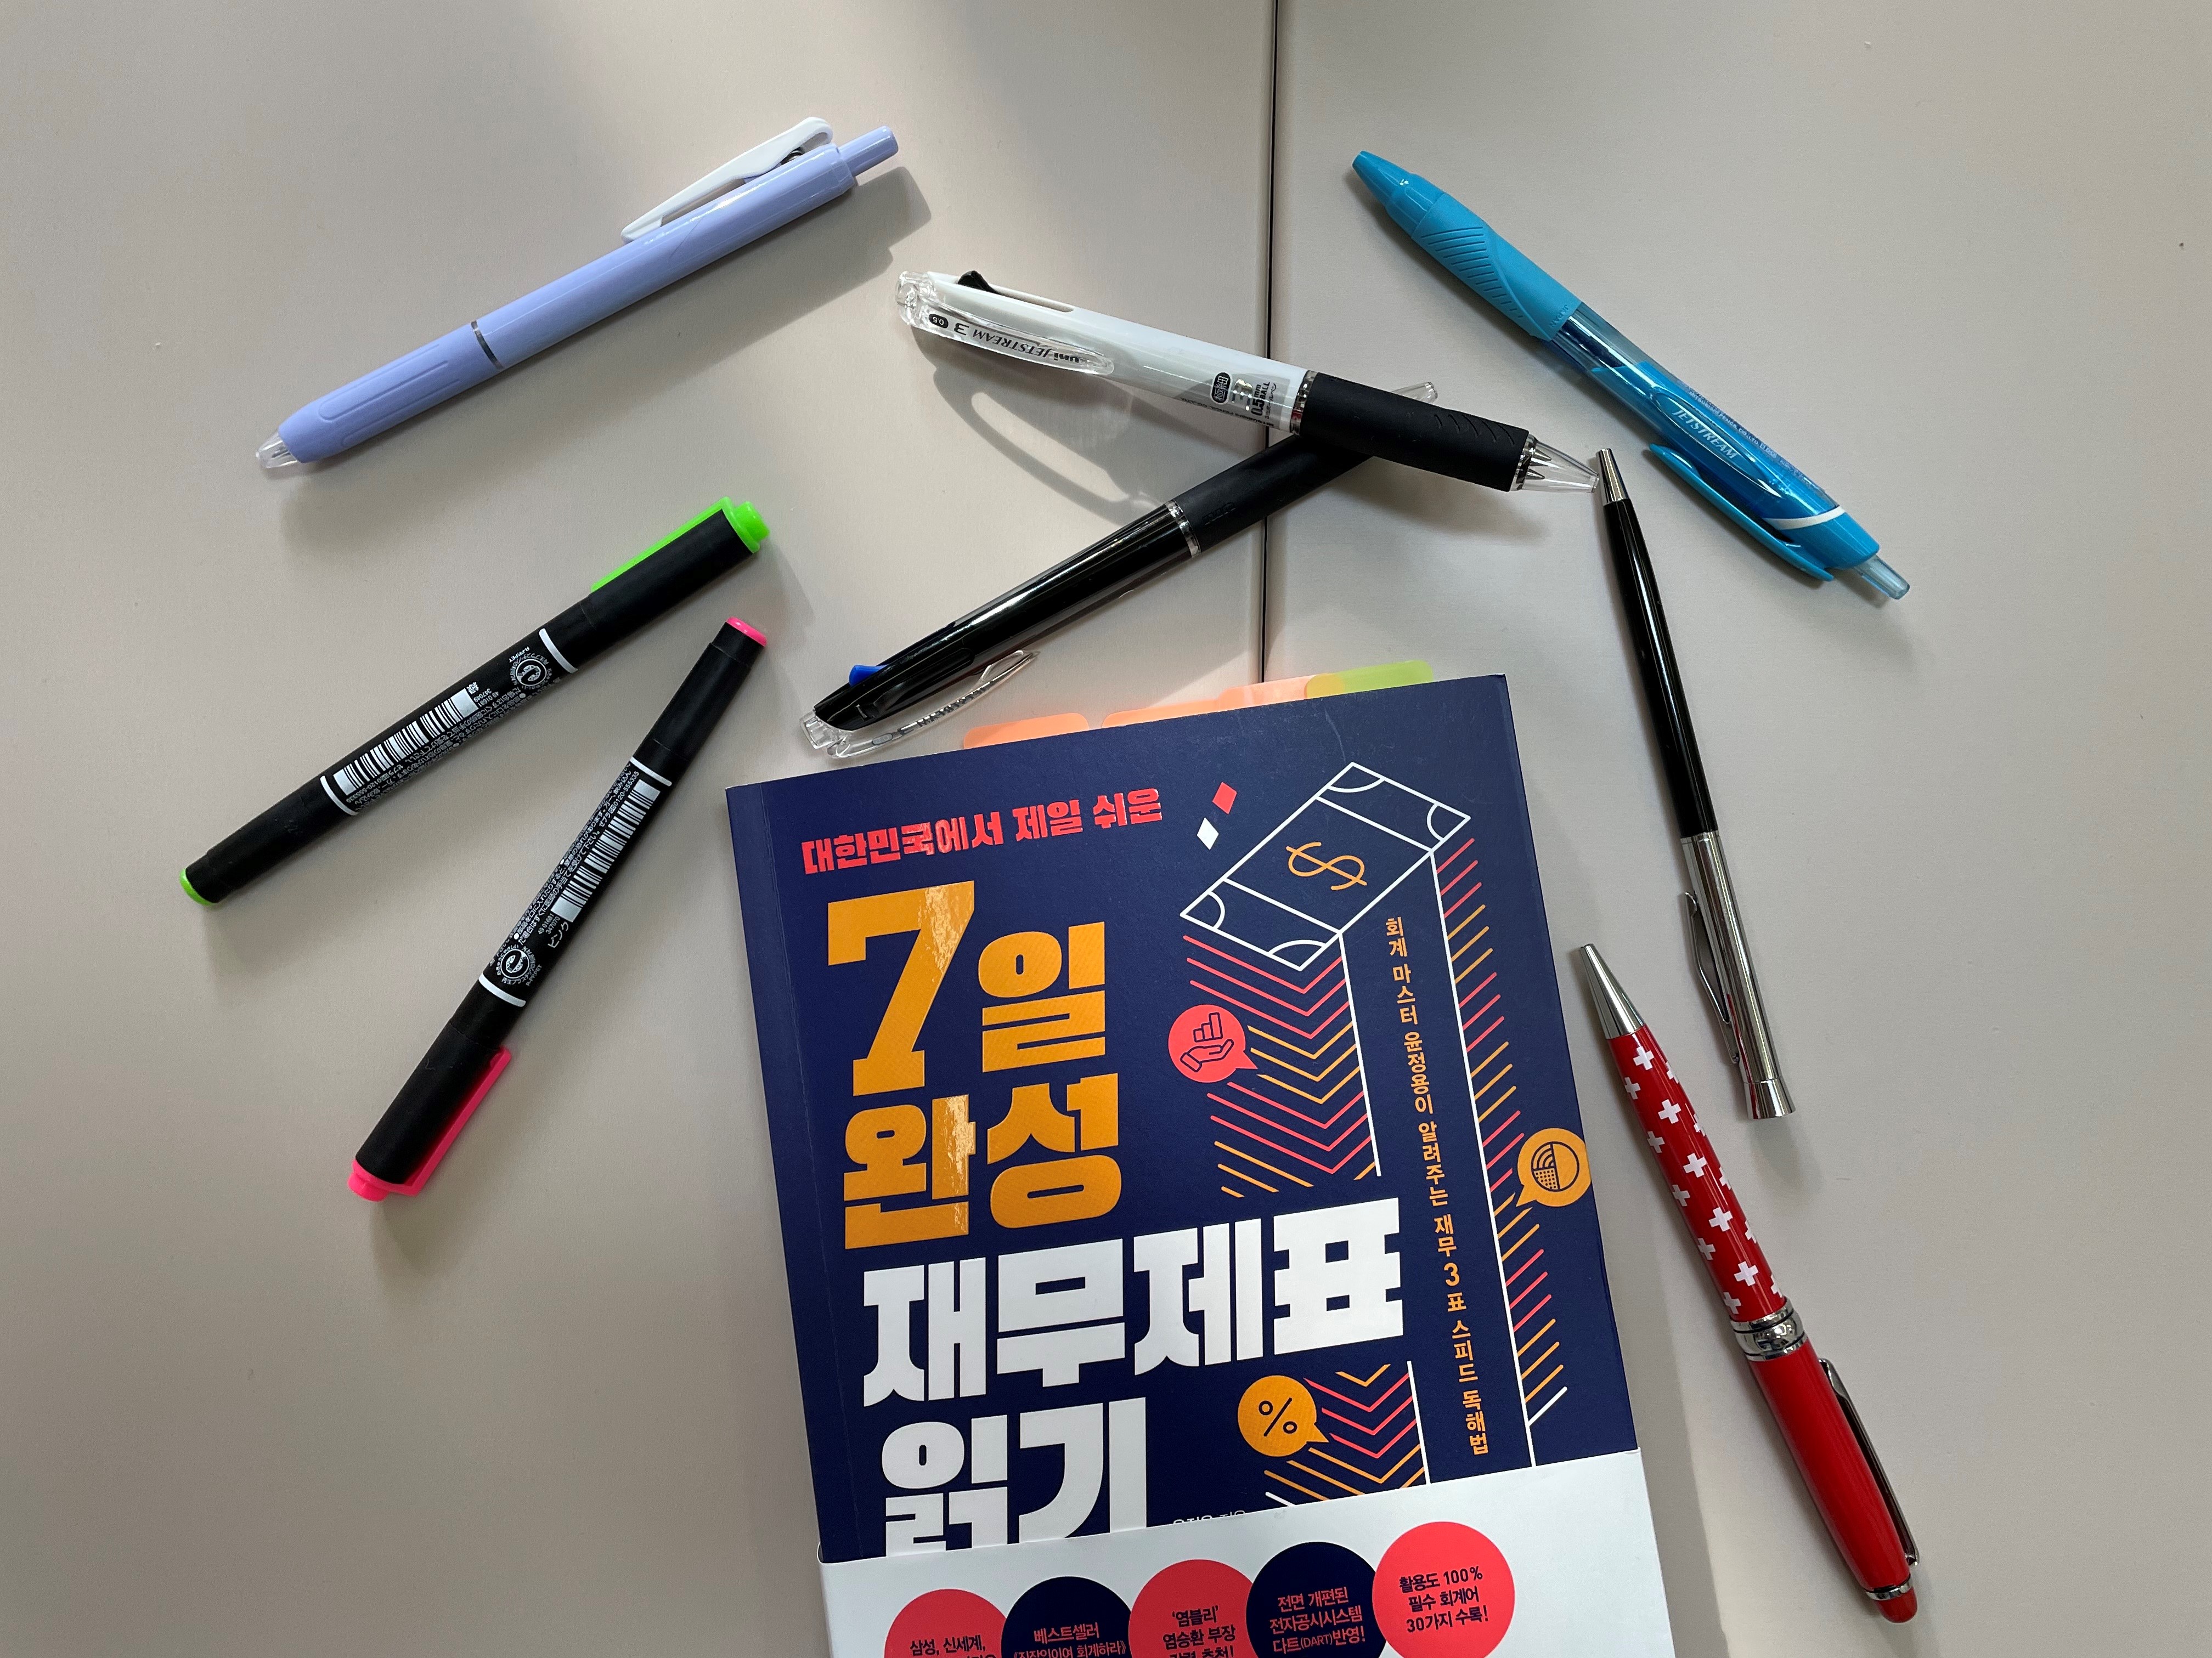 대한민국에서 제일 쉬운 7일 완성 재무제표 읽기 / 윤정용 / 비즈니스 북스